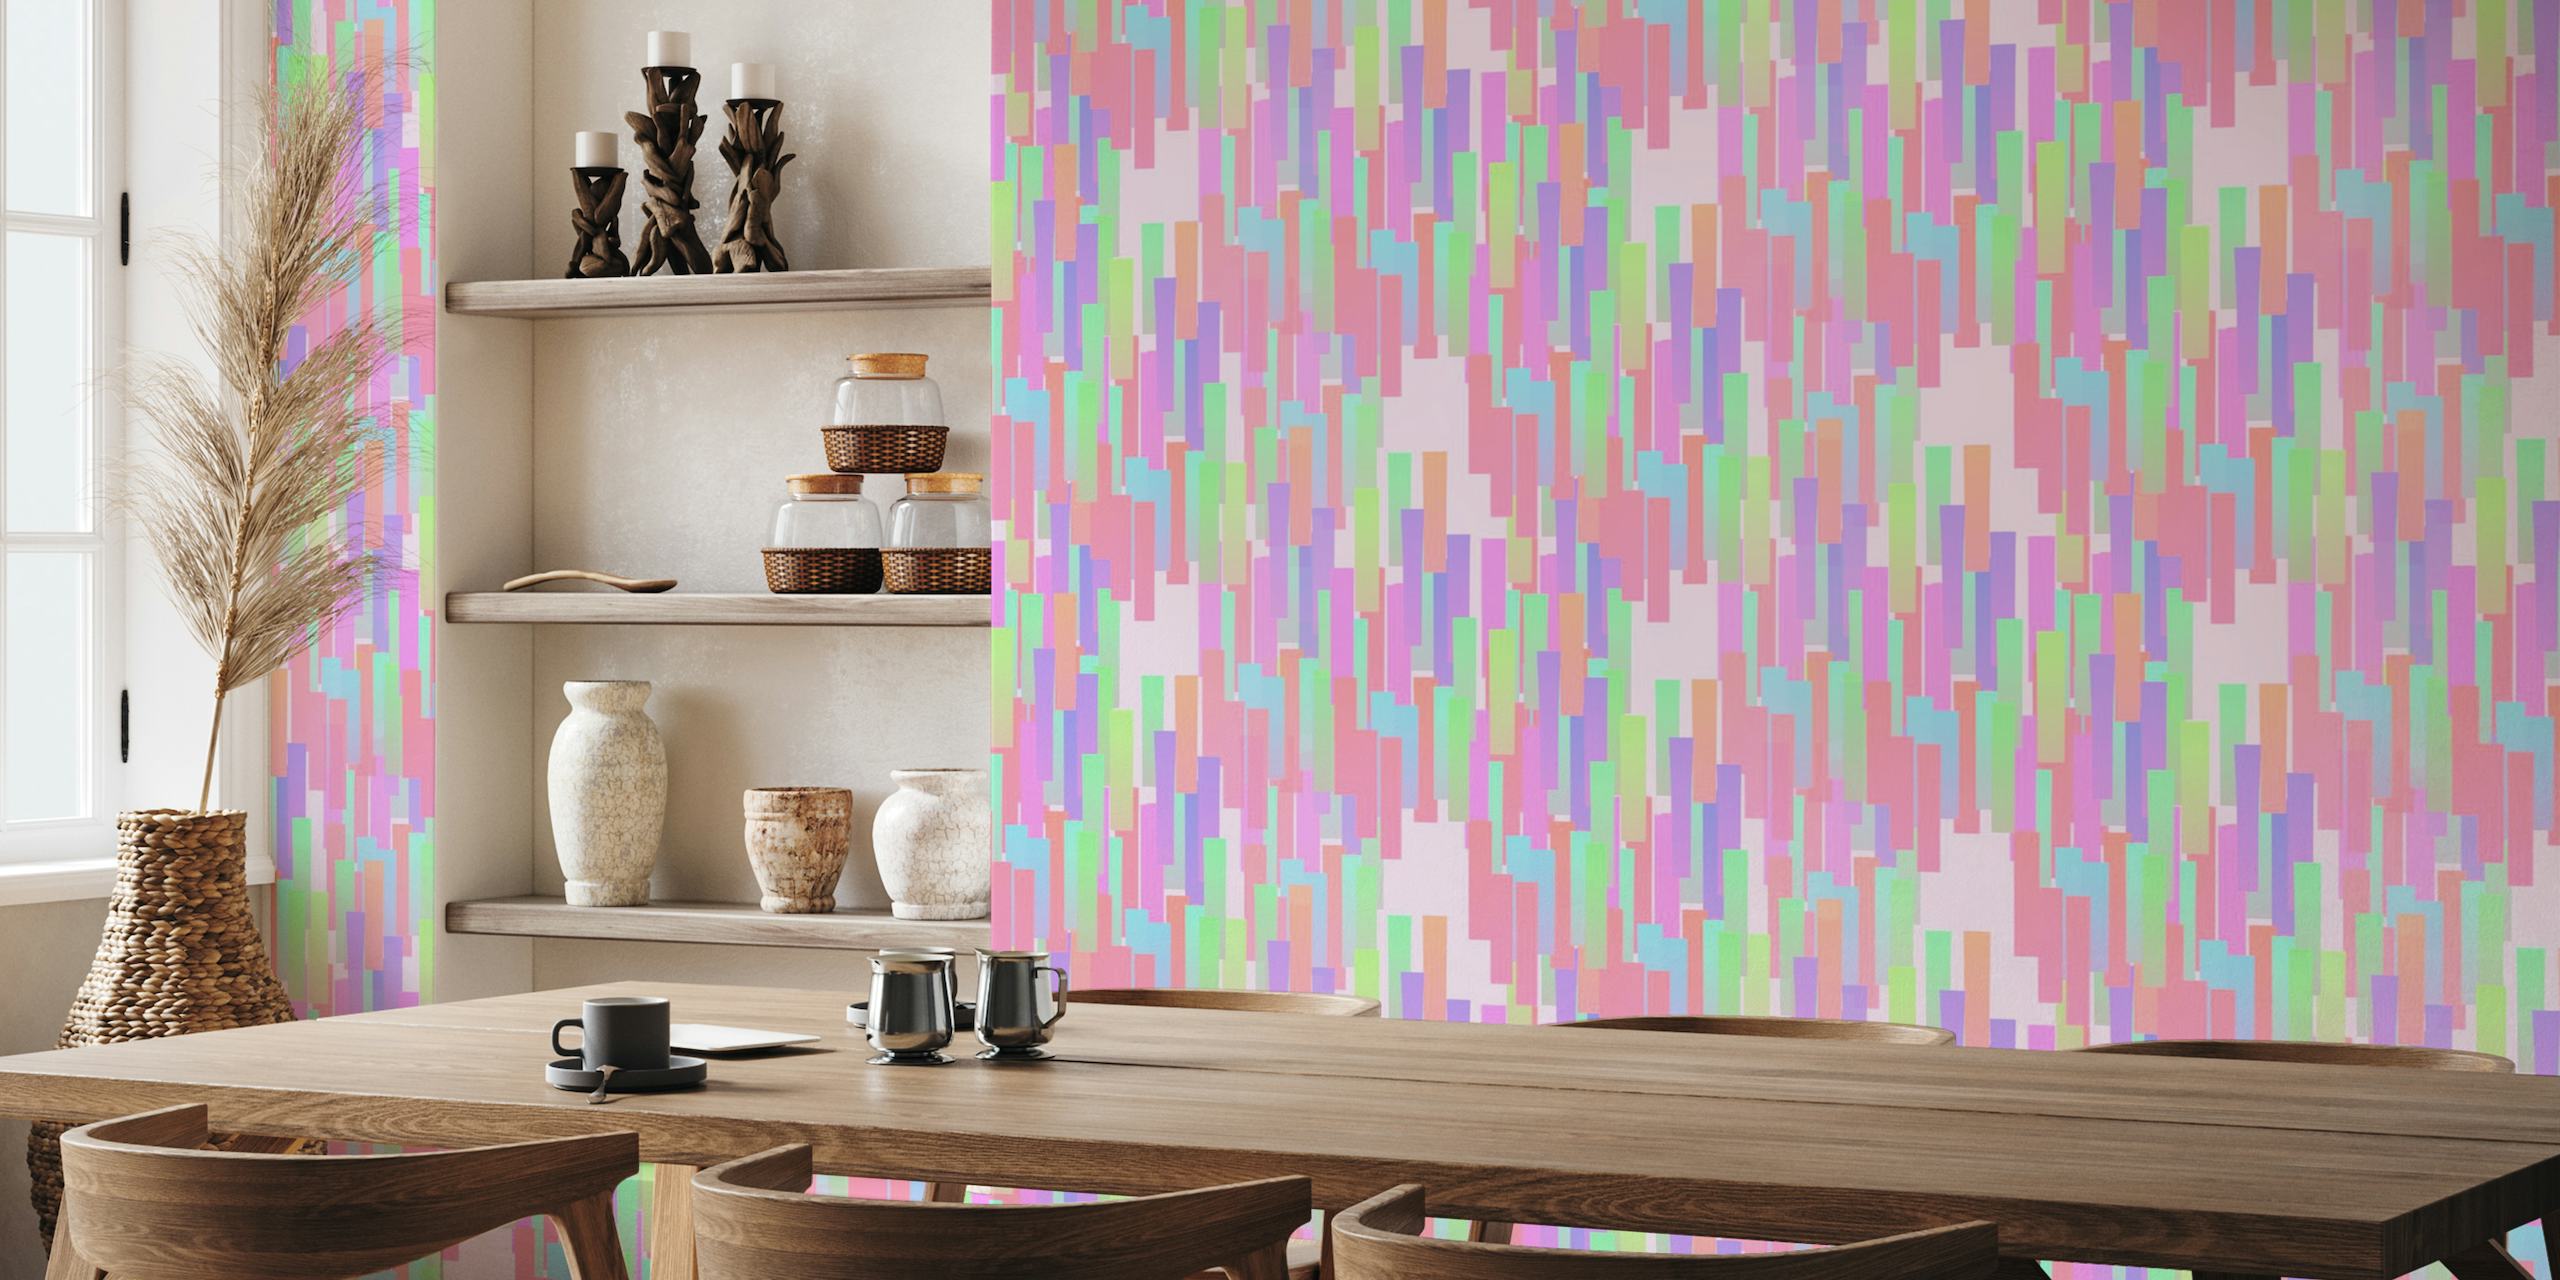 Apstraktna zidna slika s okomitim kapljicama u duginim bojama